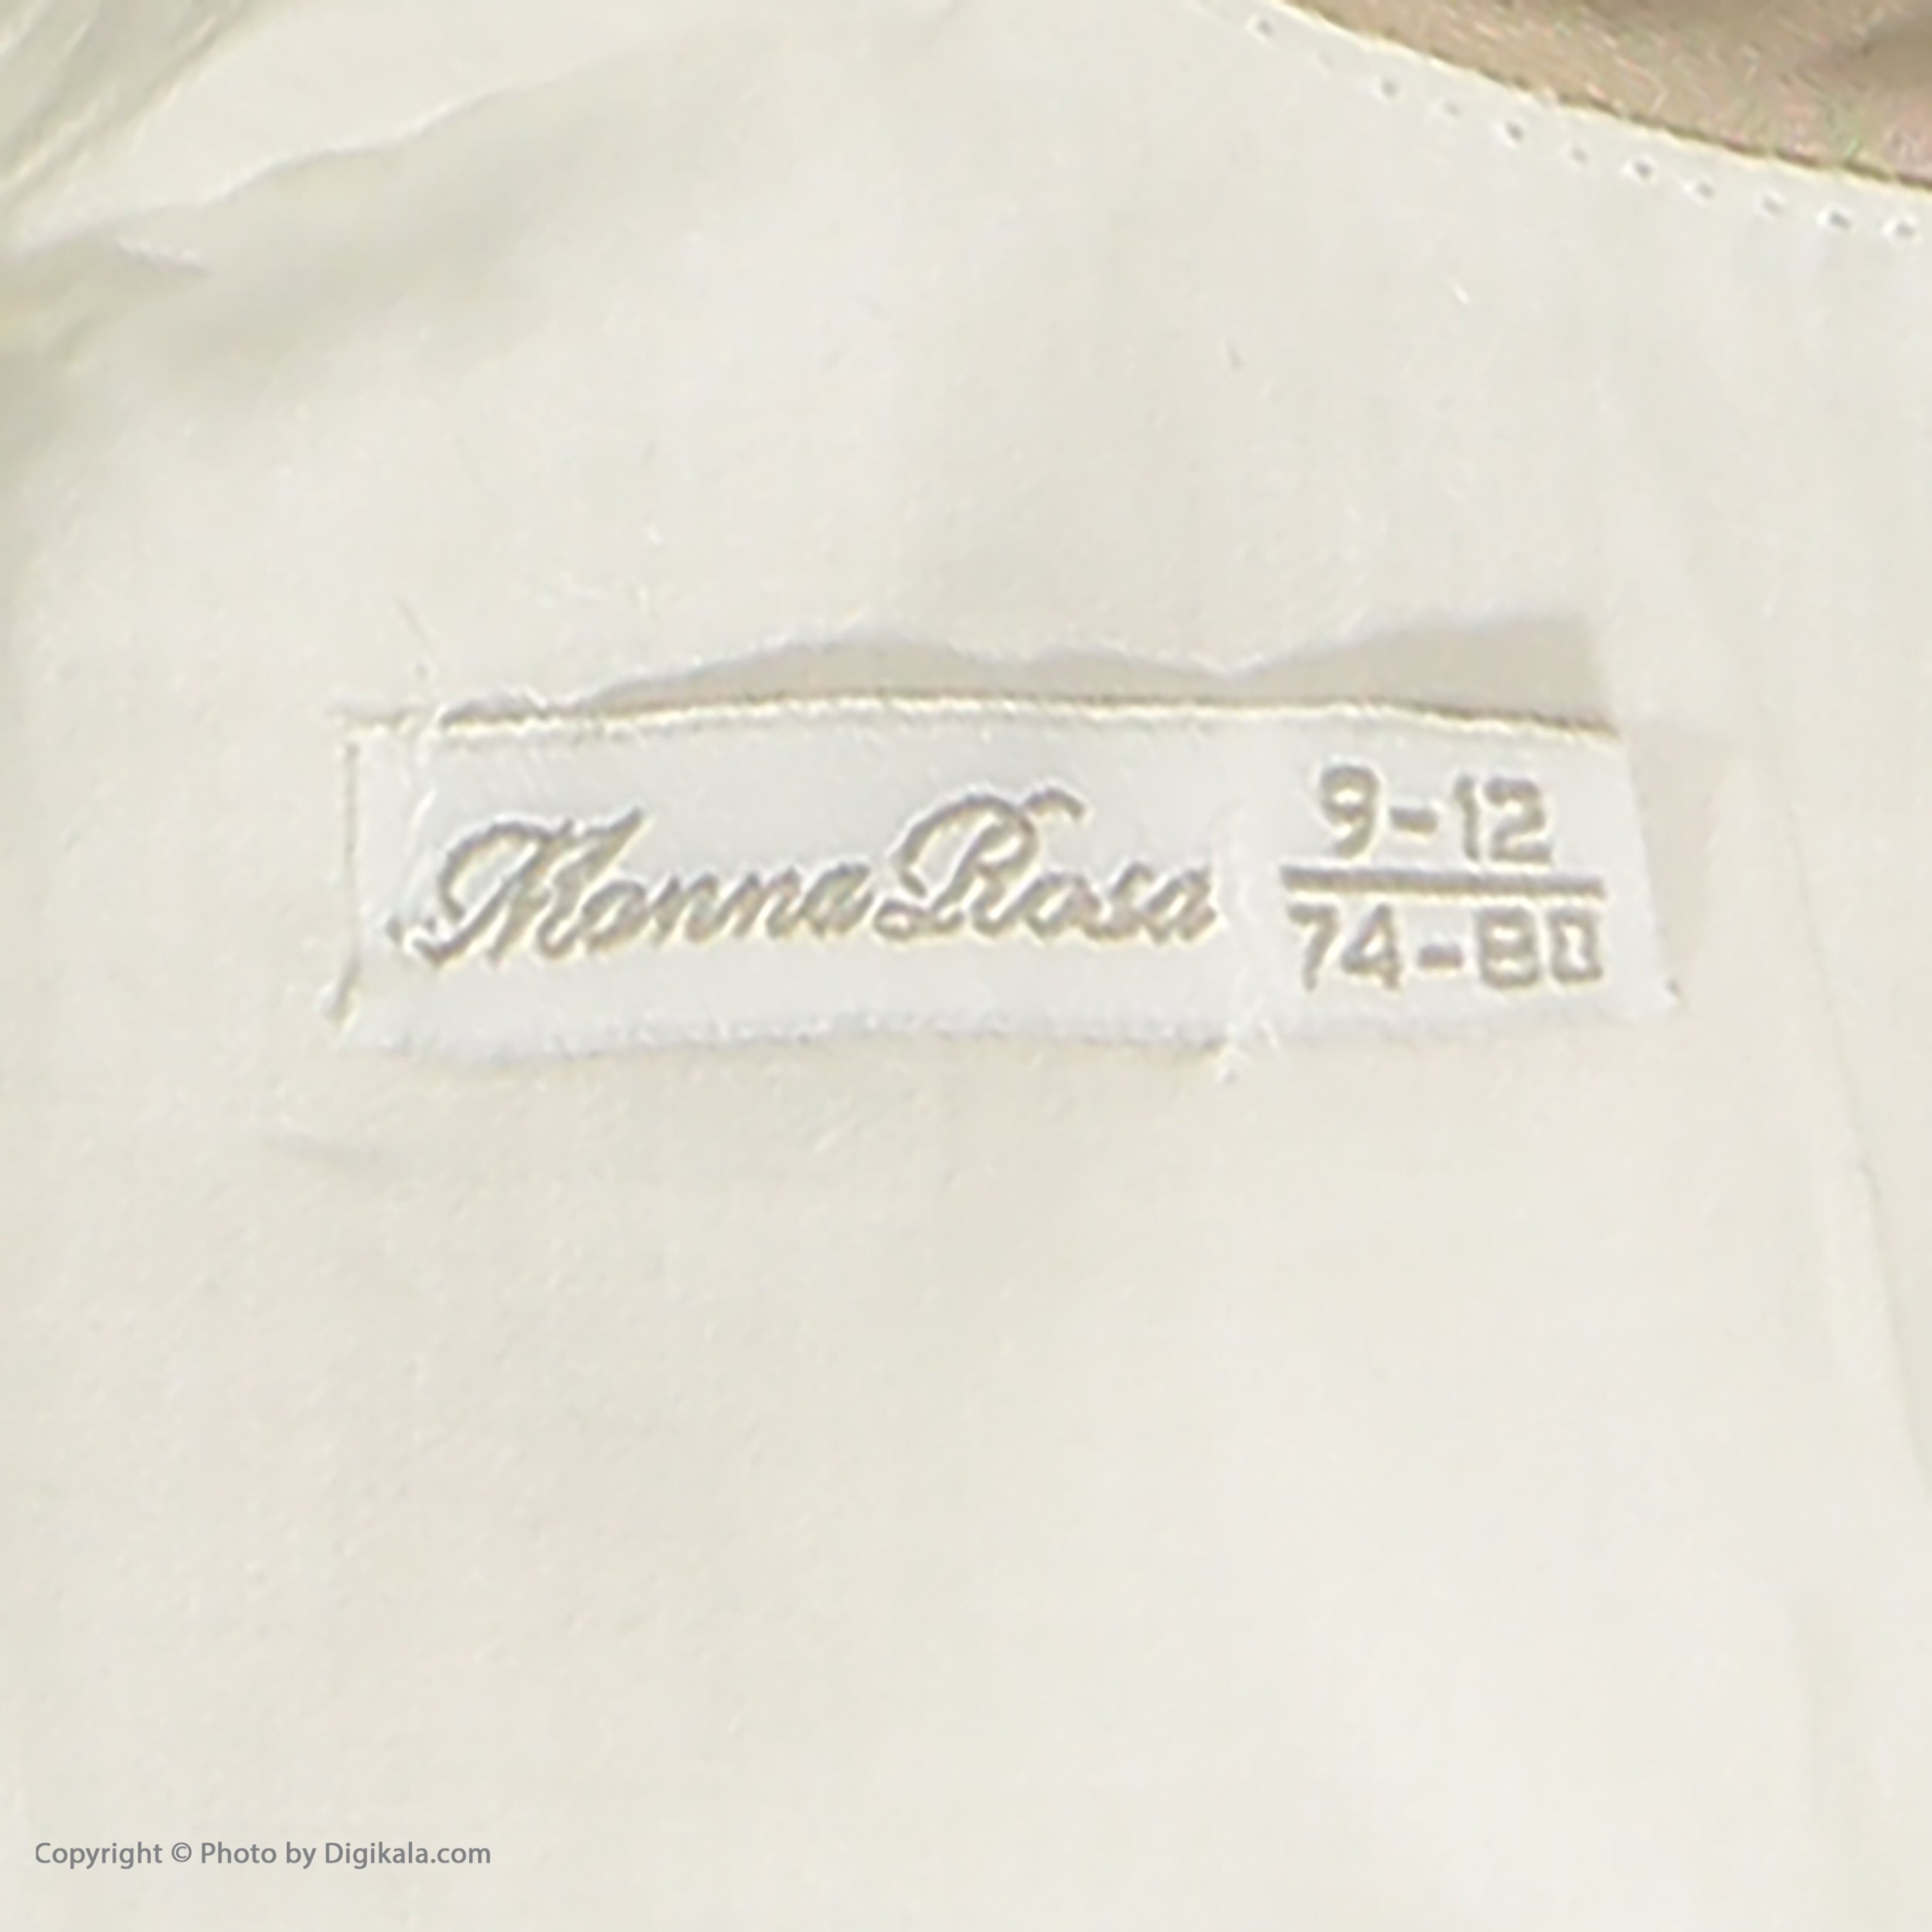 ست پیراهن و ژاکت دخترانه مونا رزا مدل 2141236-01 -  - 8